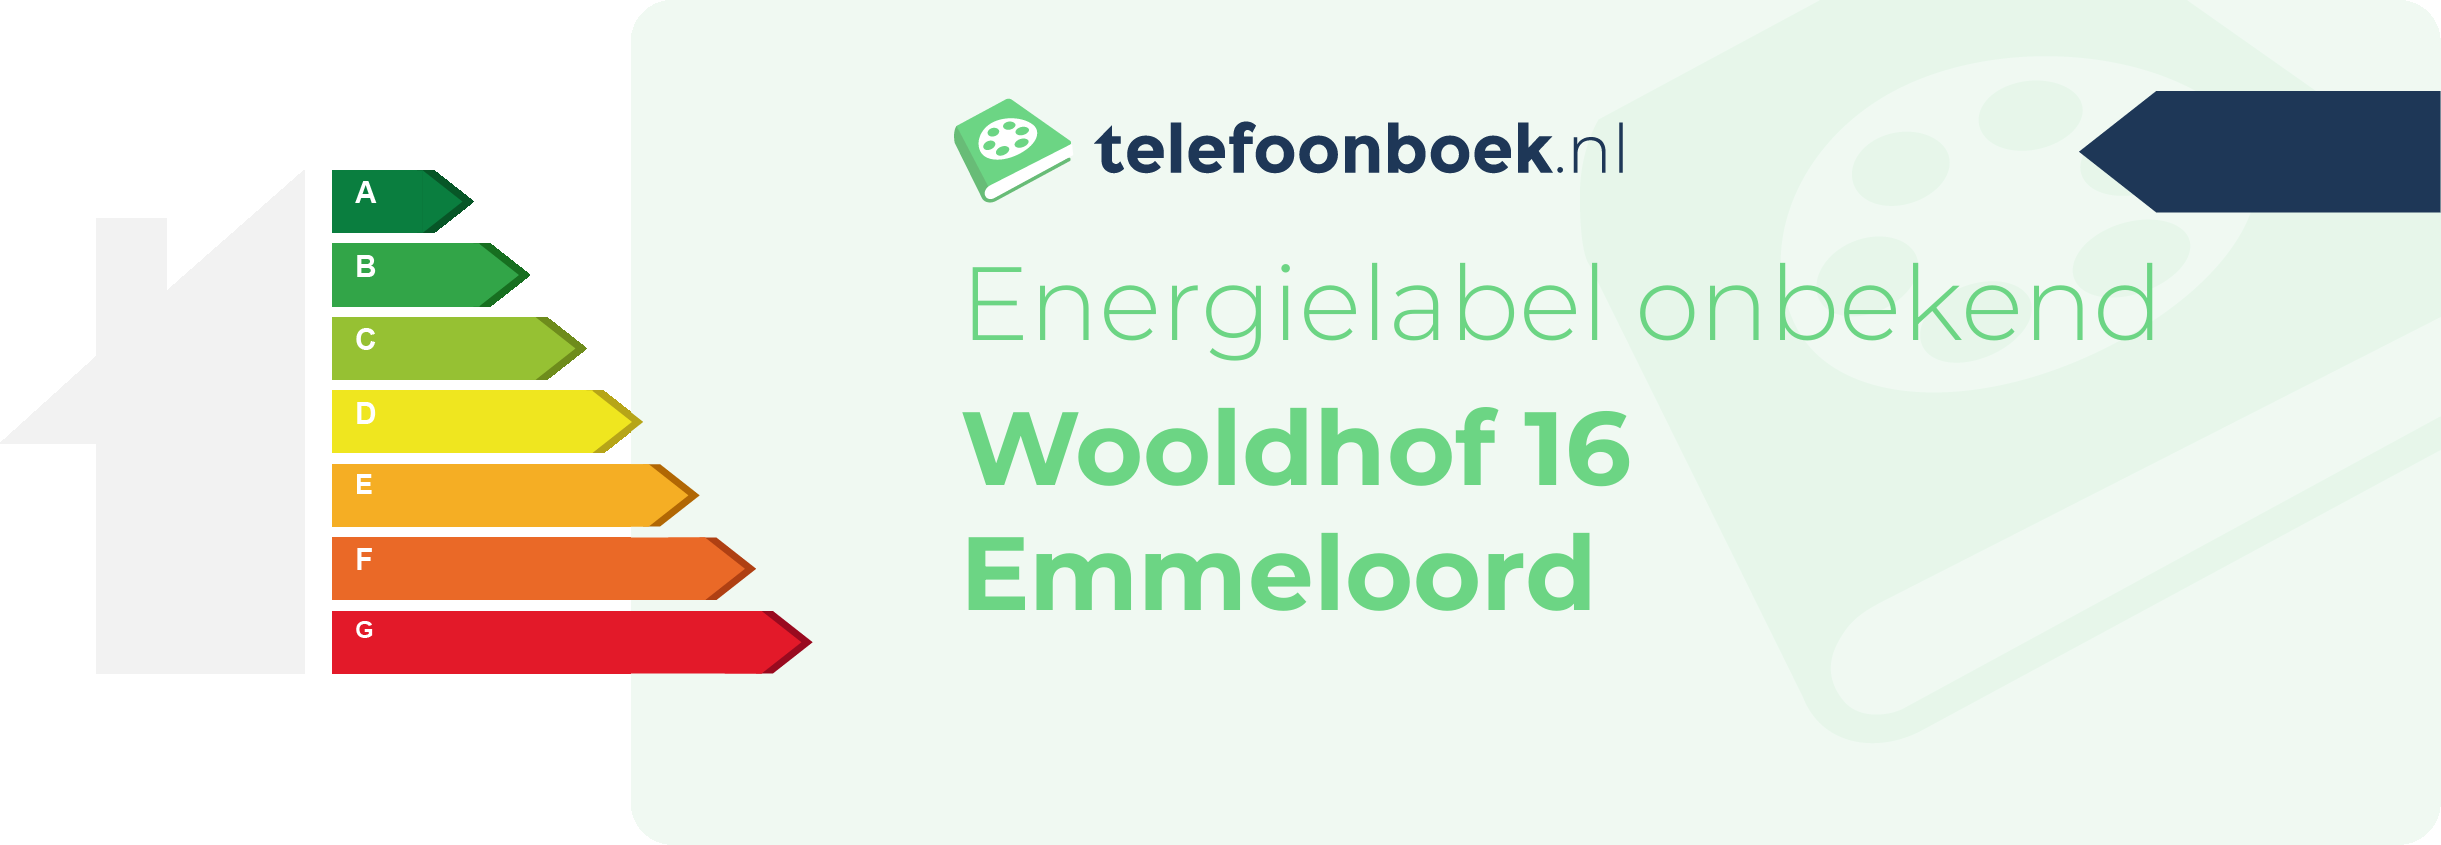 Energielabel Wooldhof 16 Emmeloord